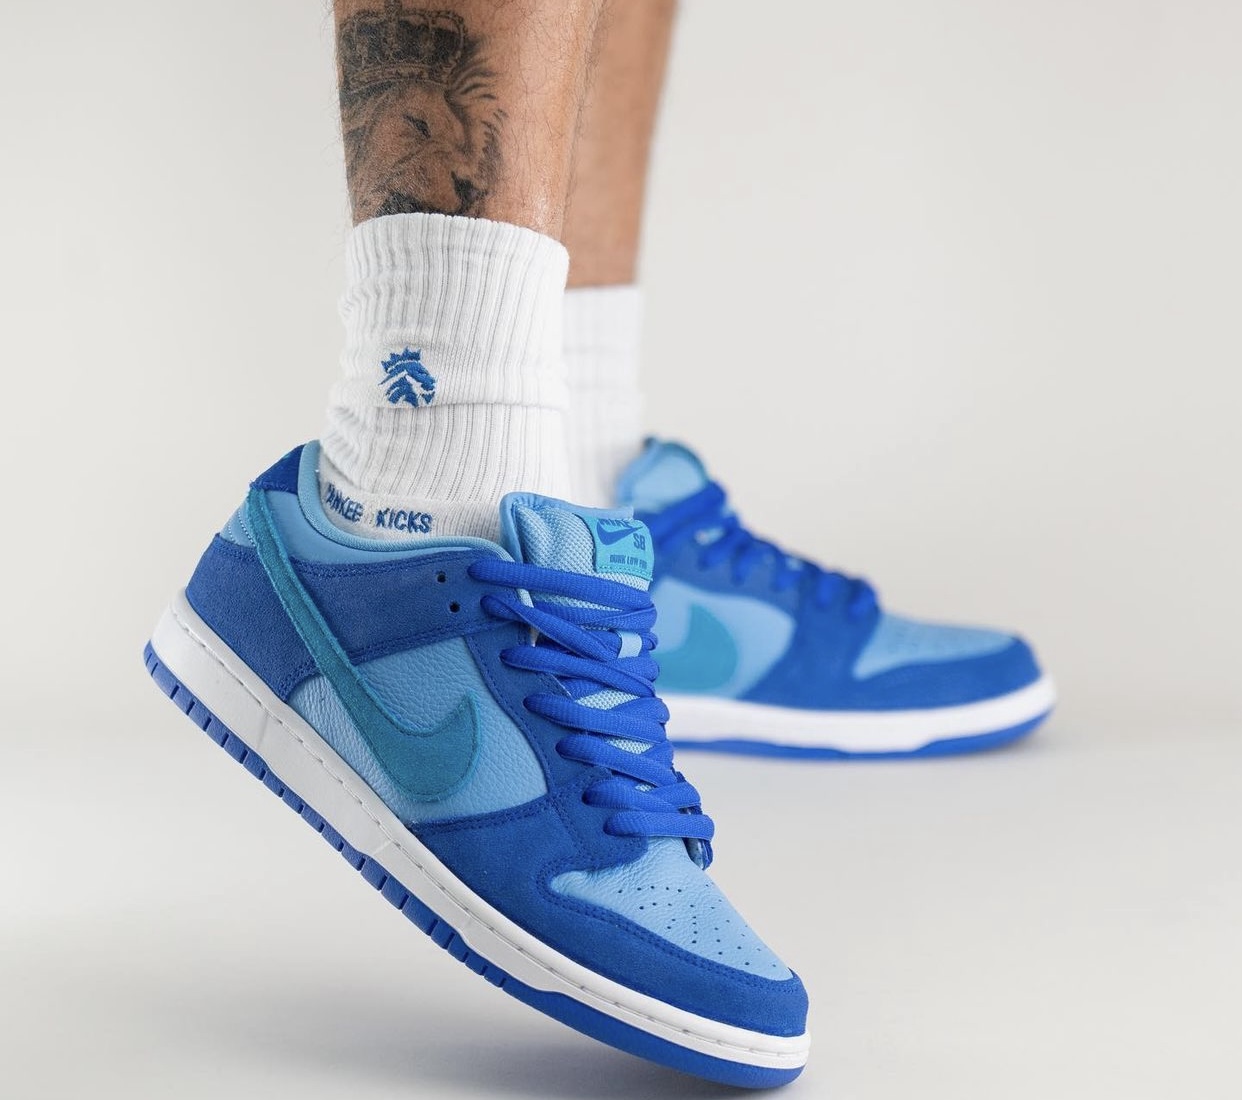 Nike SB Dunk Low Blue Raspberry DM0807 400 Release Date On Feet 6